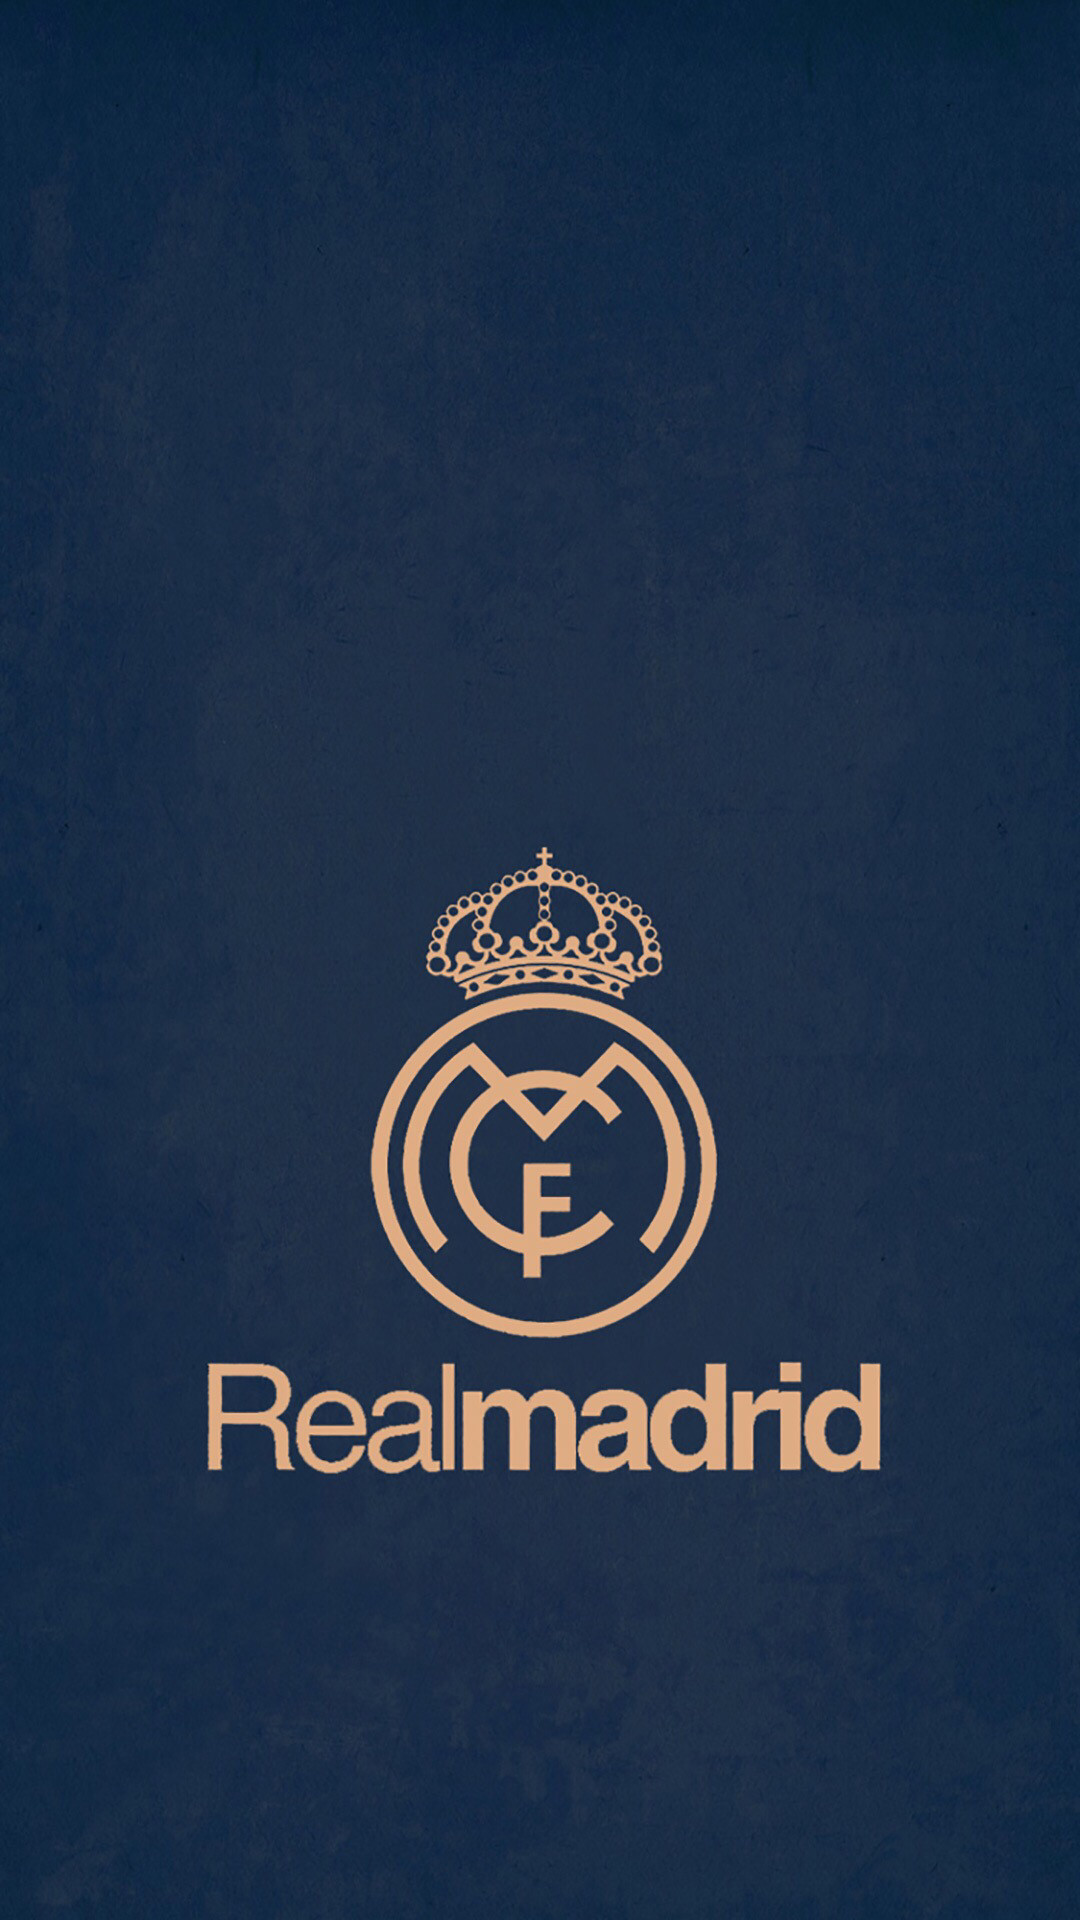 1080x1920 HD Real Madrid Wallpaper Ã RealMadrid Wallpaper